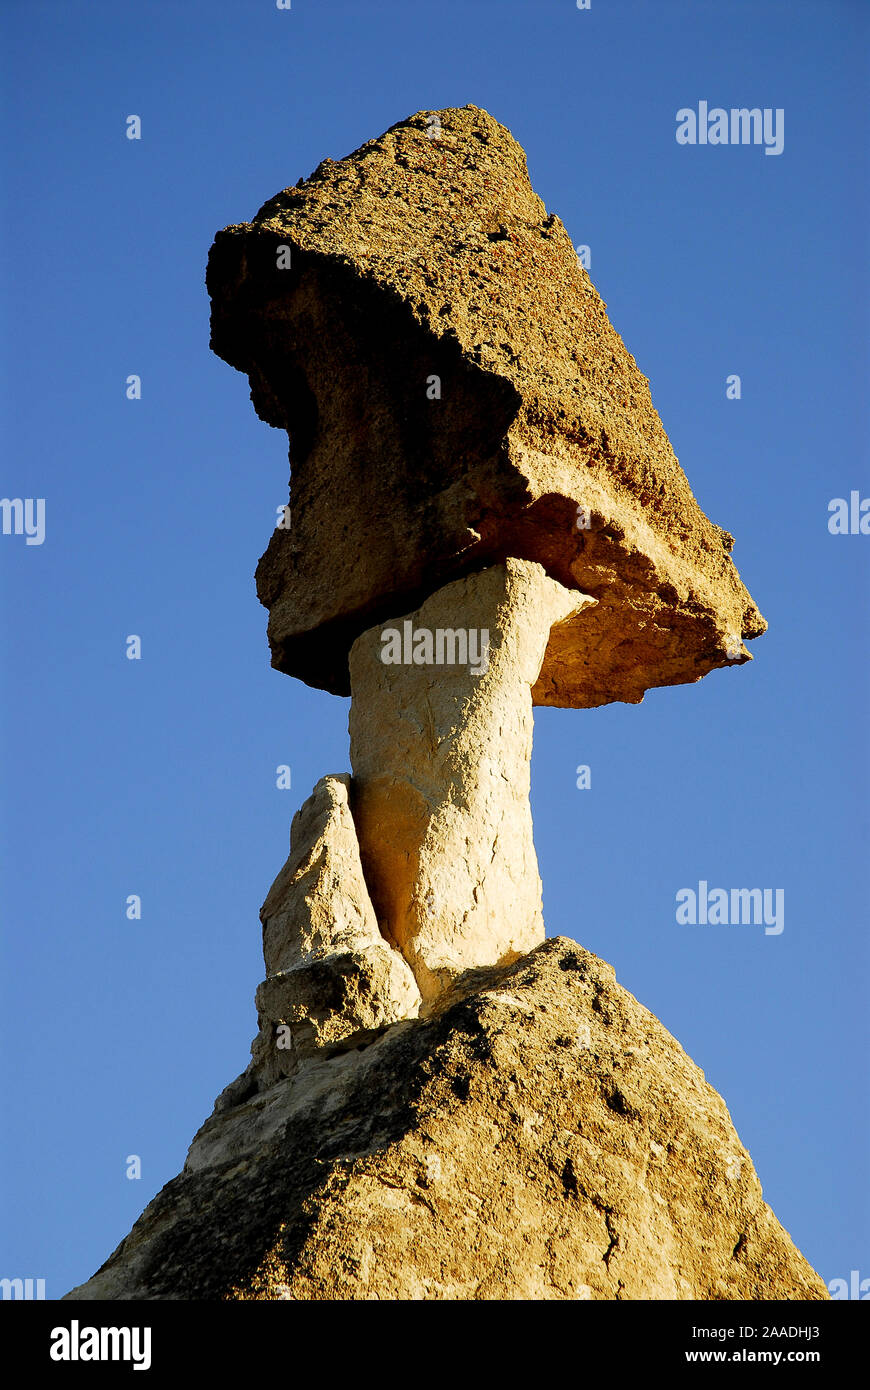 Pinnacles, auch bekannt als feenkamine oder Hoodoo, Liebe Tal. Goreme National Park und den Felsen von Kappadokien Weltkulturerbe der UNESCO. Die Türkei. Dezember 2006. Stockfoto